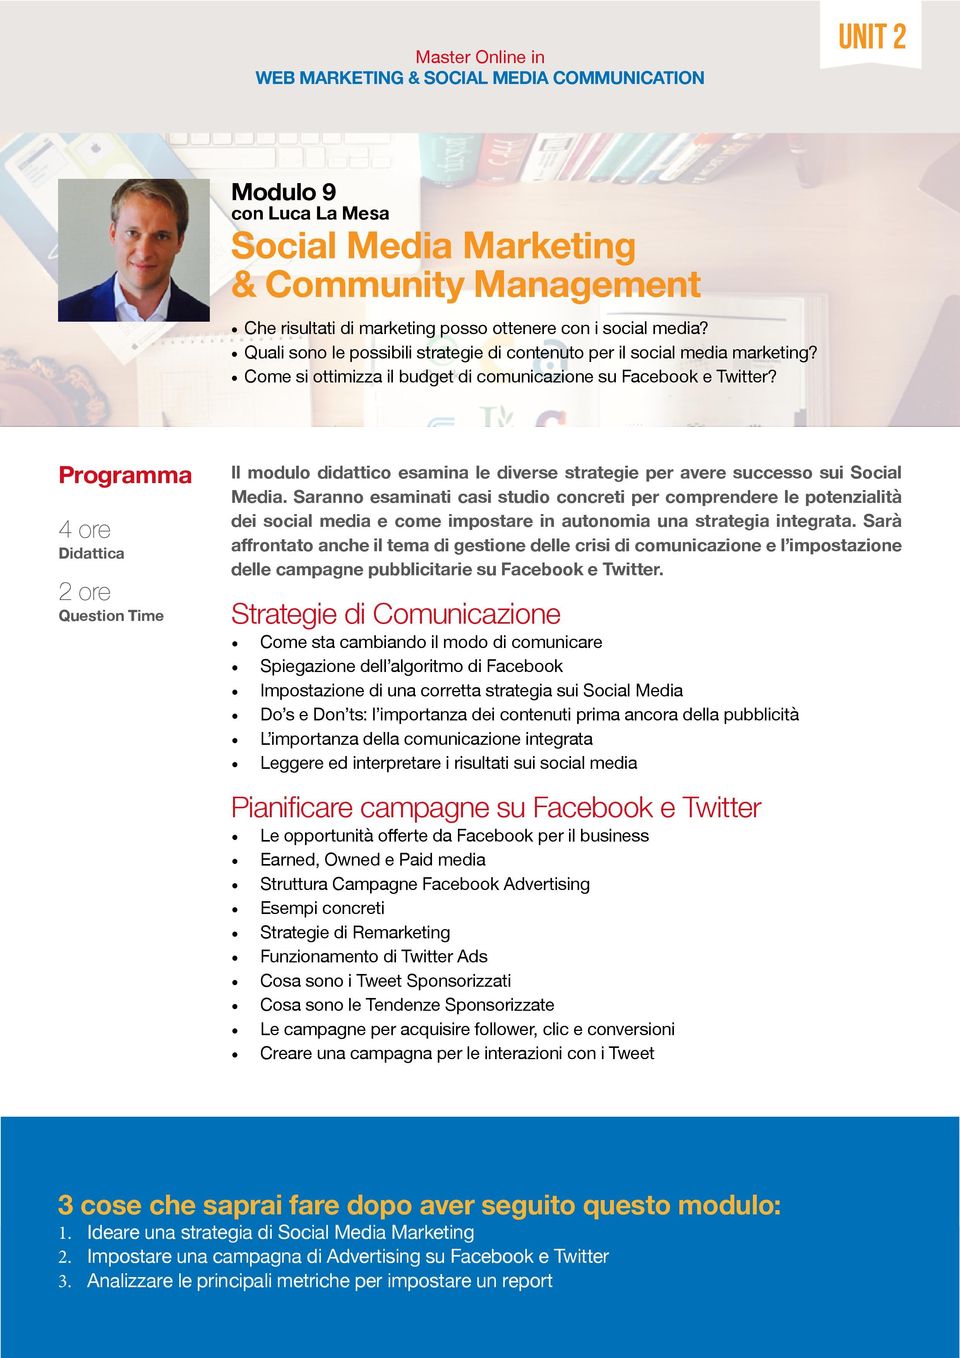 4 ore Il modulo didattico esamina le diverse strategie per avere successo sui Social Media.